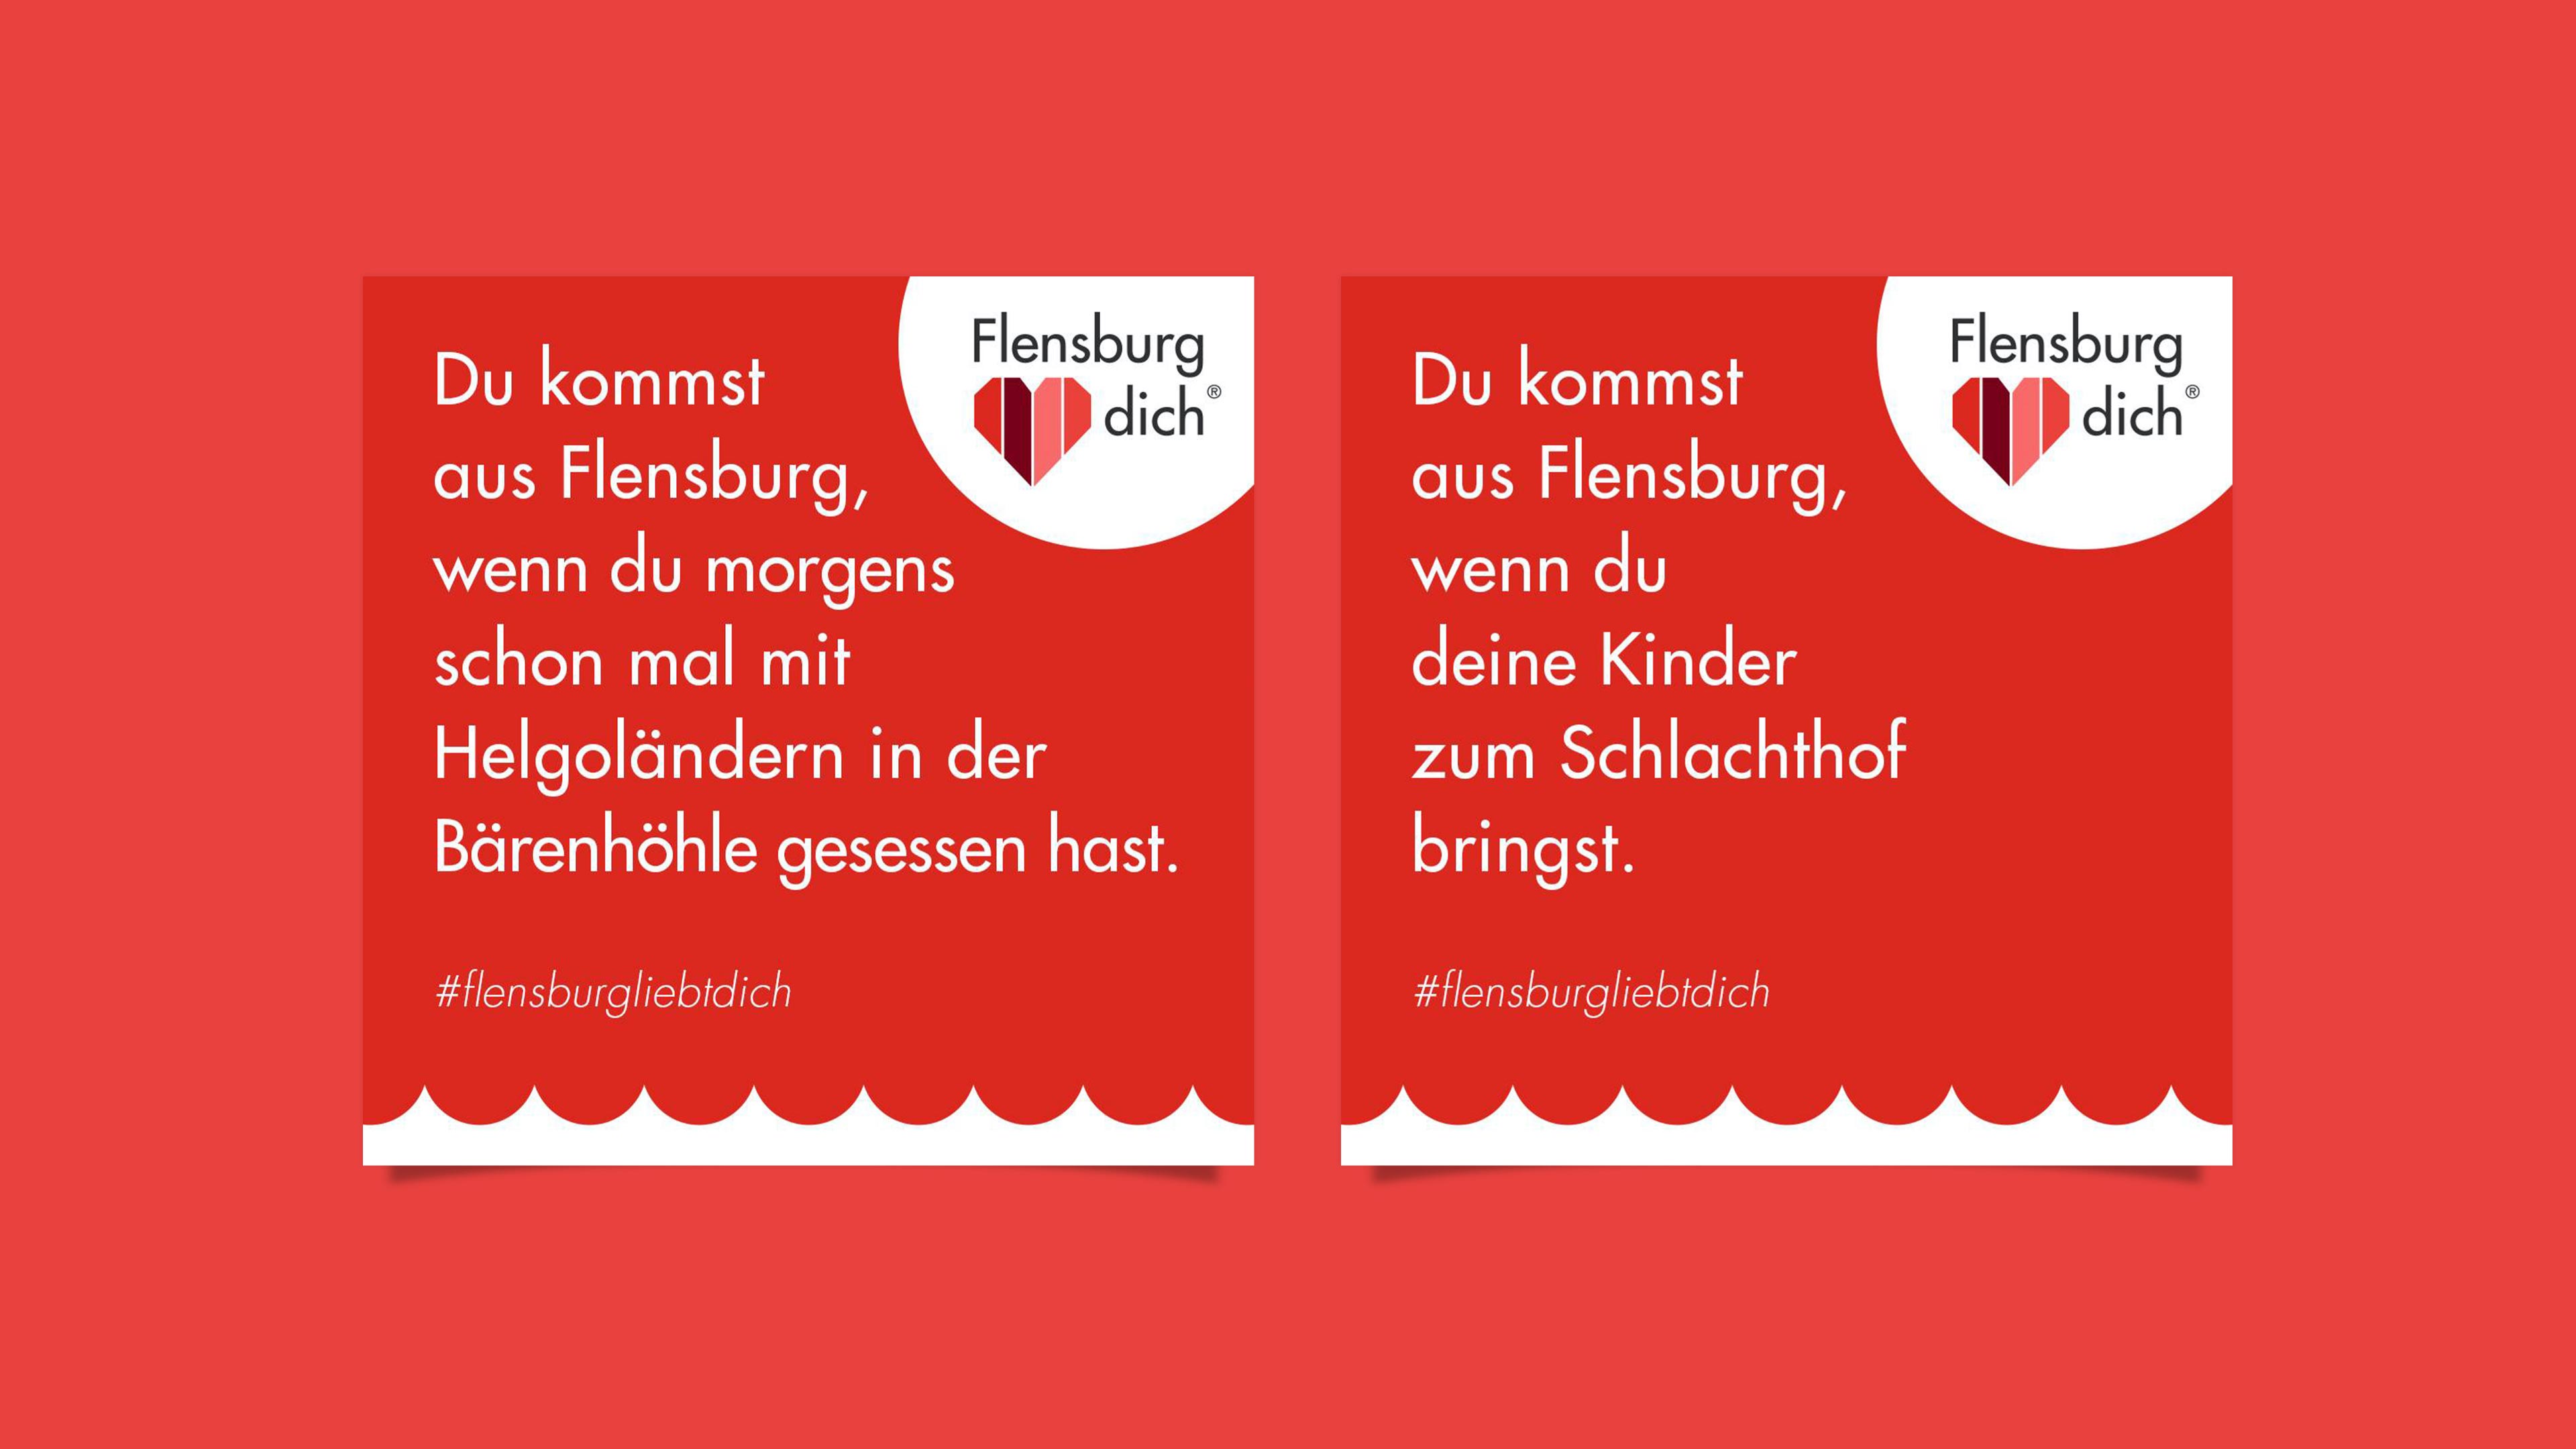 Zwei rote Teaser mit Logo und Text "Du kommst aus Flensburg, wenn du morgens schon mal mit Helgoländern in der Bärenhöhle gesessen hast" und "Du kommst aus Flensburg, wenn du deine Kinder zum Schlachthof bringst"